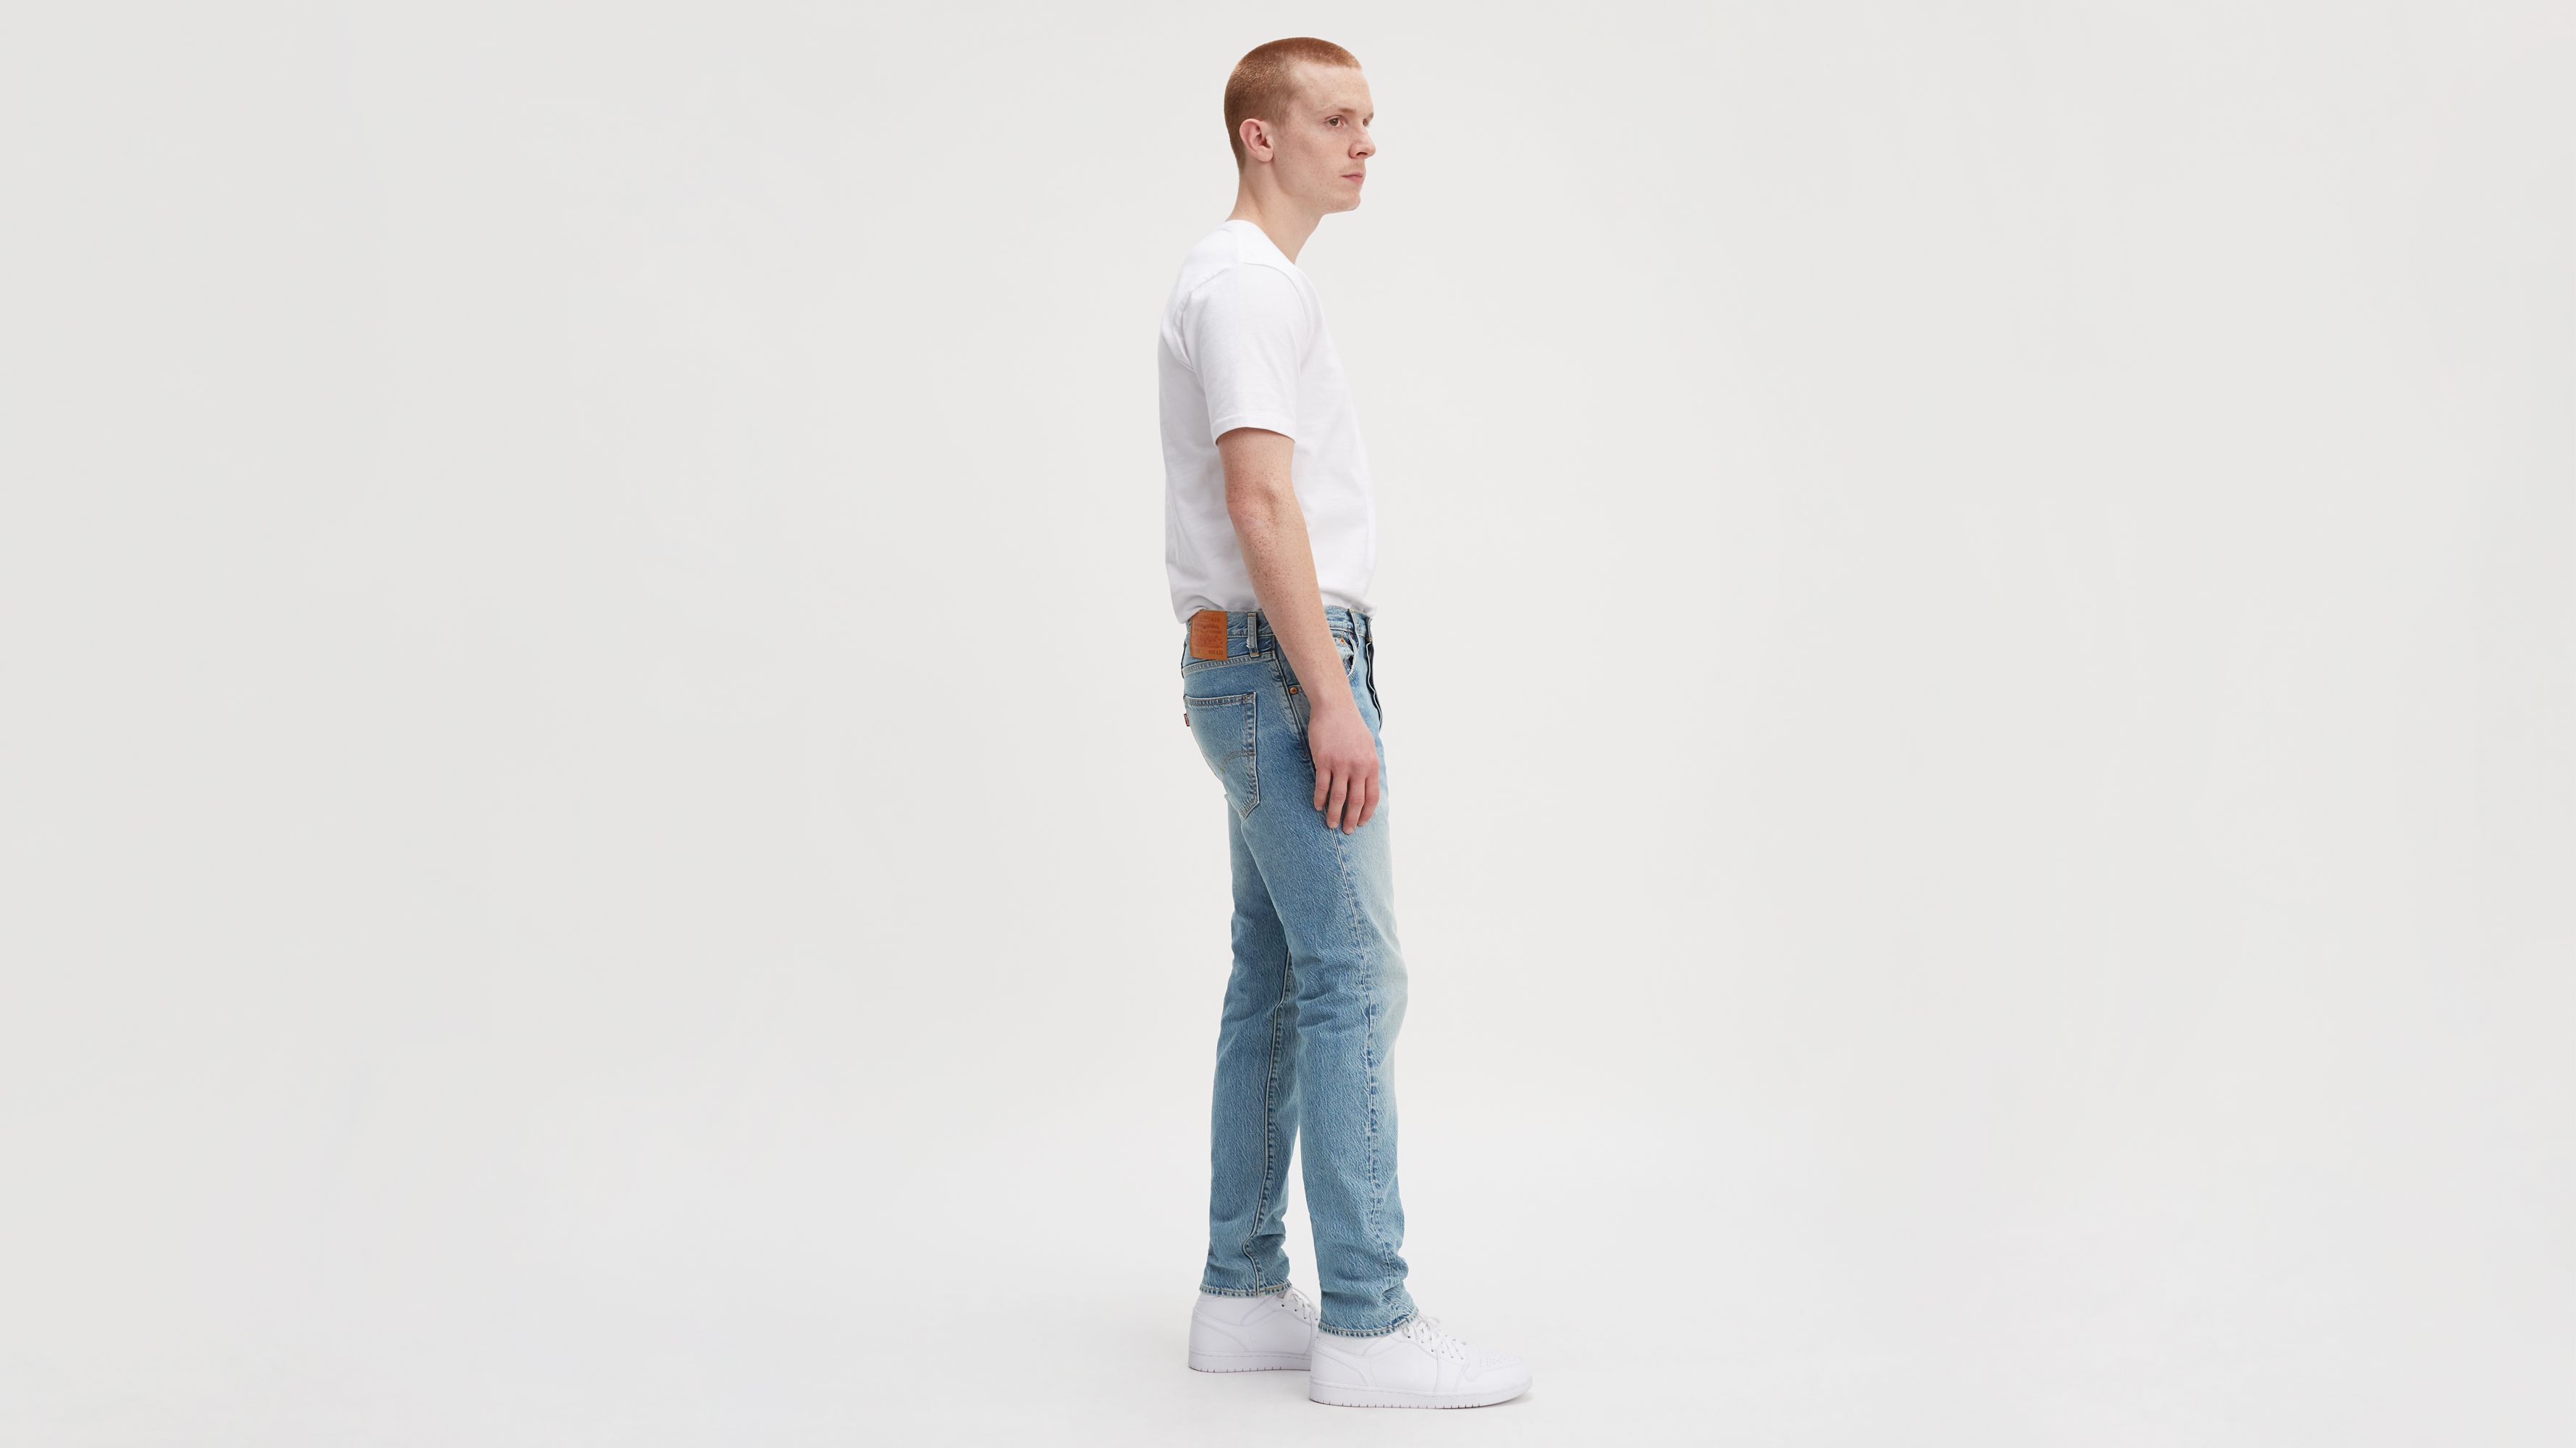 501® Slim Taper Fit Men's Jeans - Medium Wash | Levi's® US